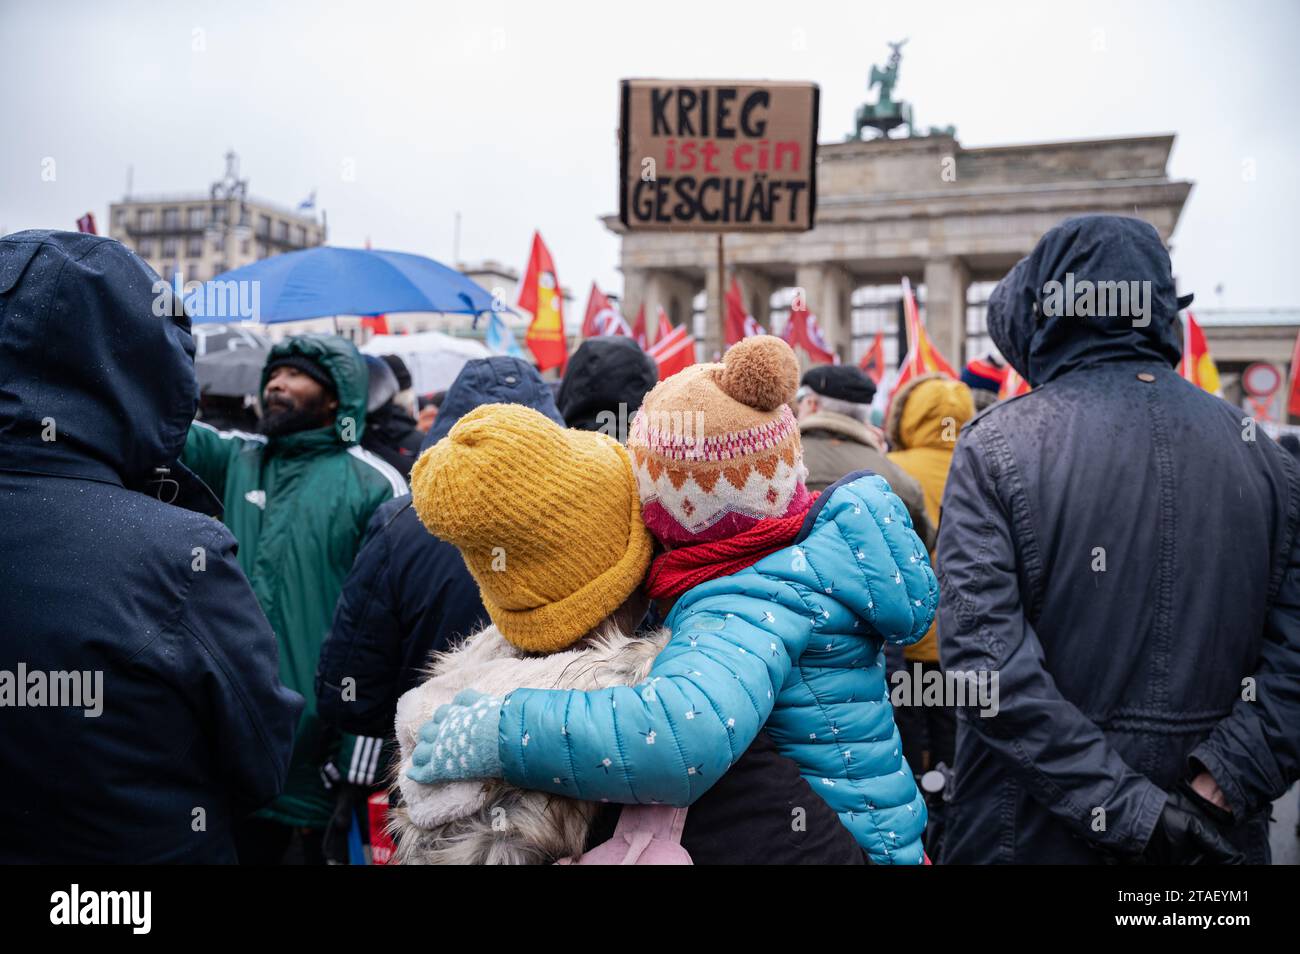 25.11.2023, Berlino, Germania, Europa - diverse migliaia di persone manifestano per la pace e contro la guerra alla porta di Brandeburgo nel quartiere Mitte di Berlino. Foto Stock